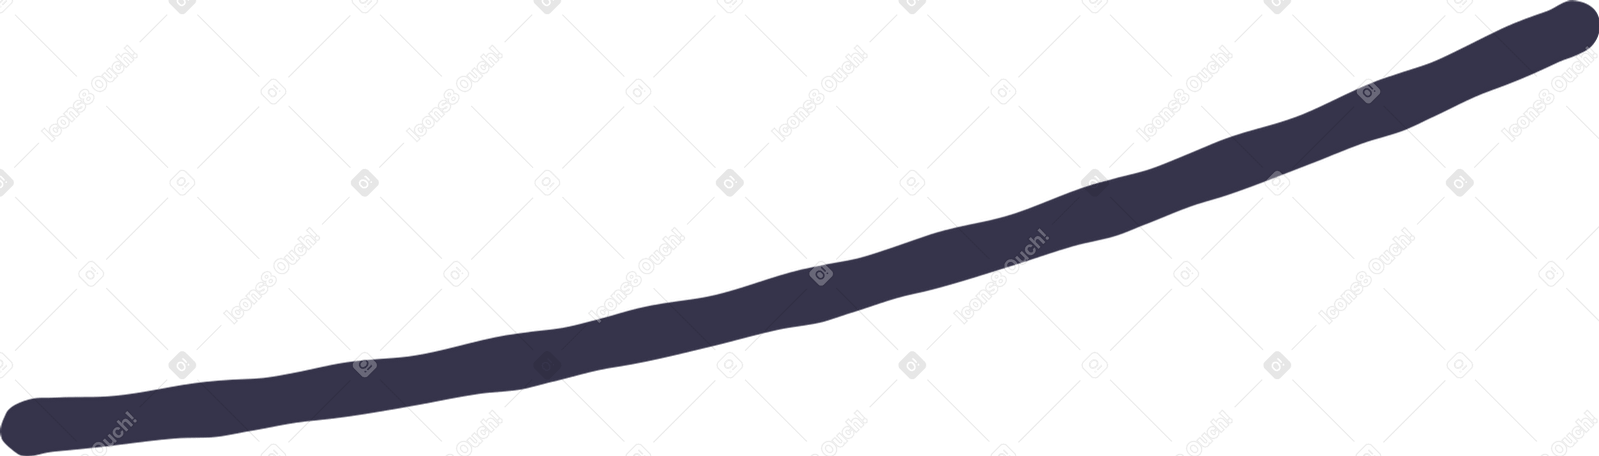 flagrope Illustration in PNG, SVG